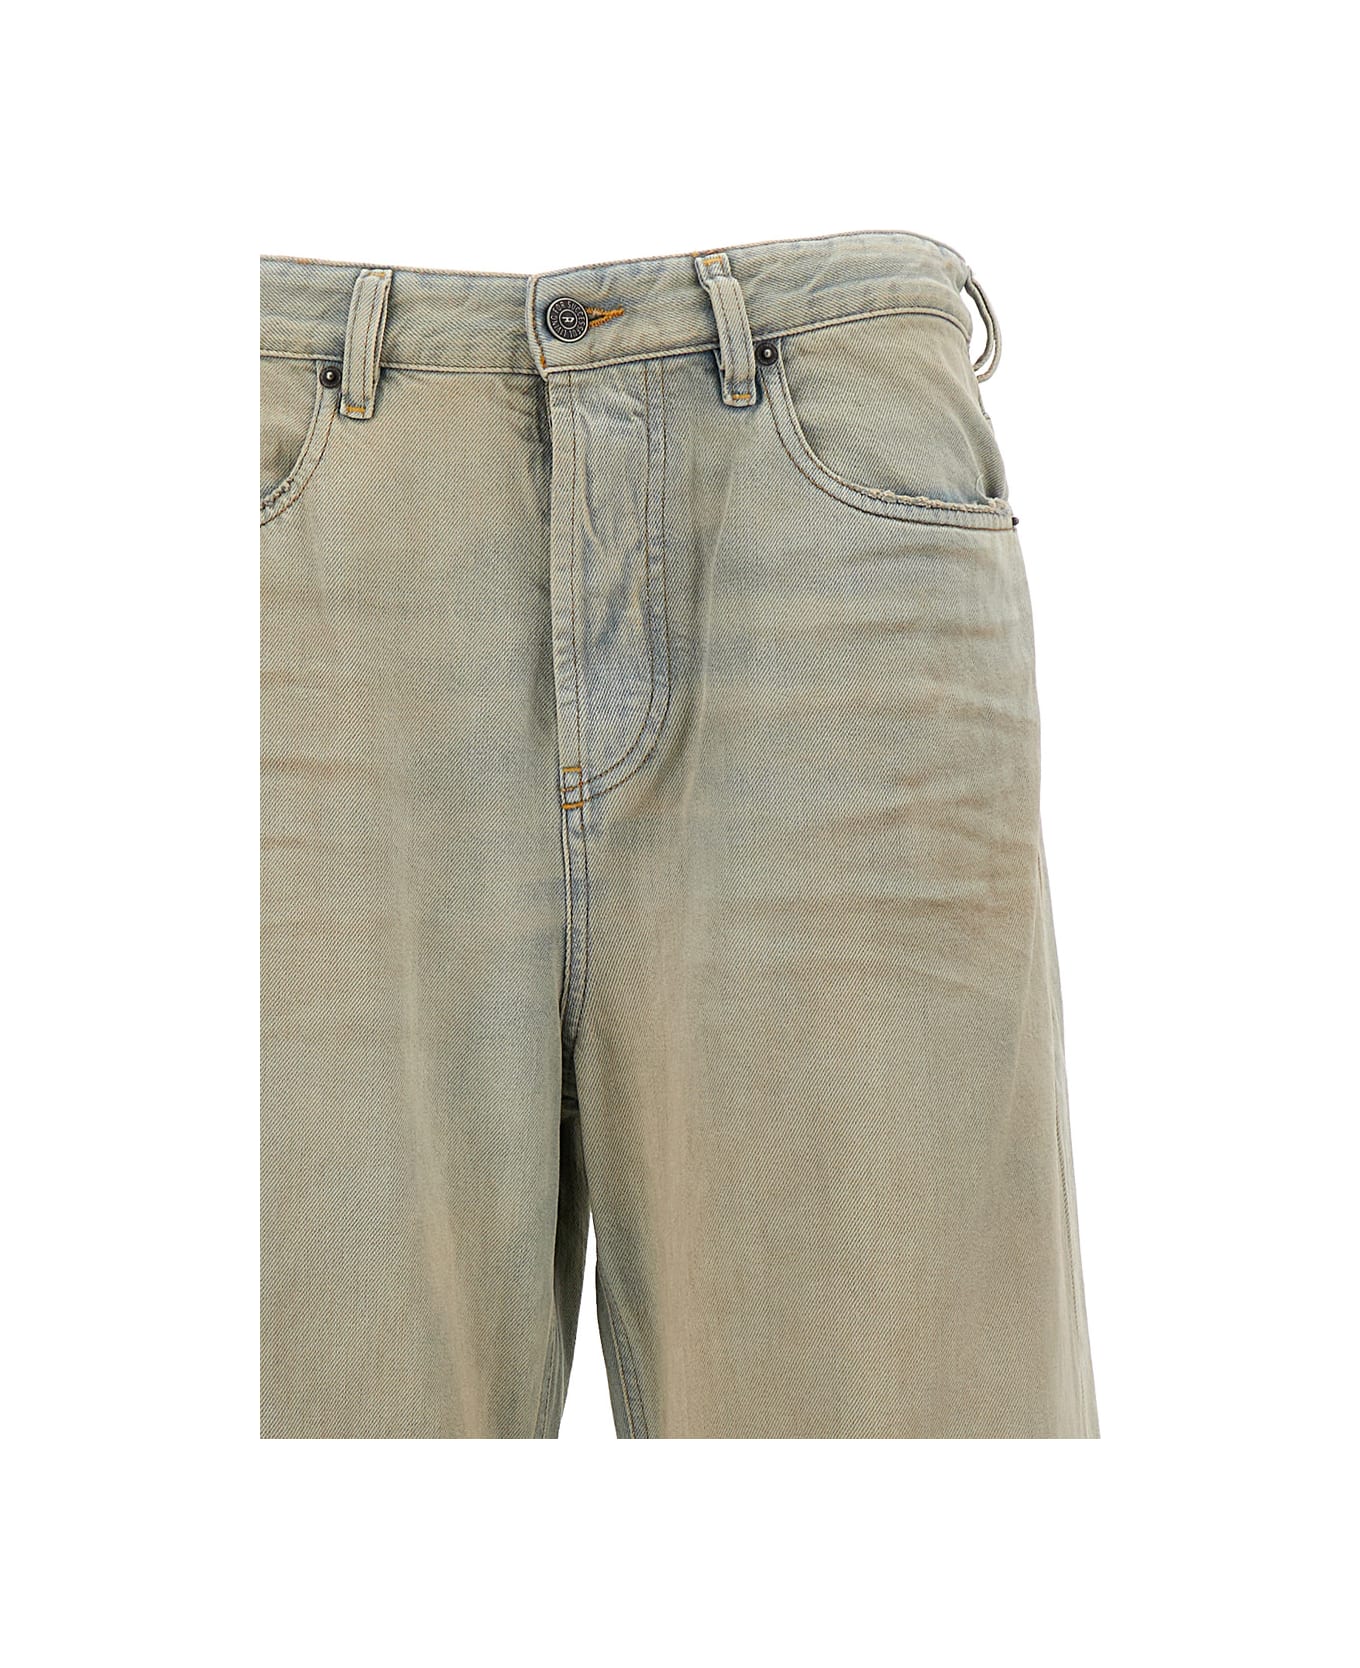 Diesel Beige Faded Effect Jeans In Cotton Woman - Beige